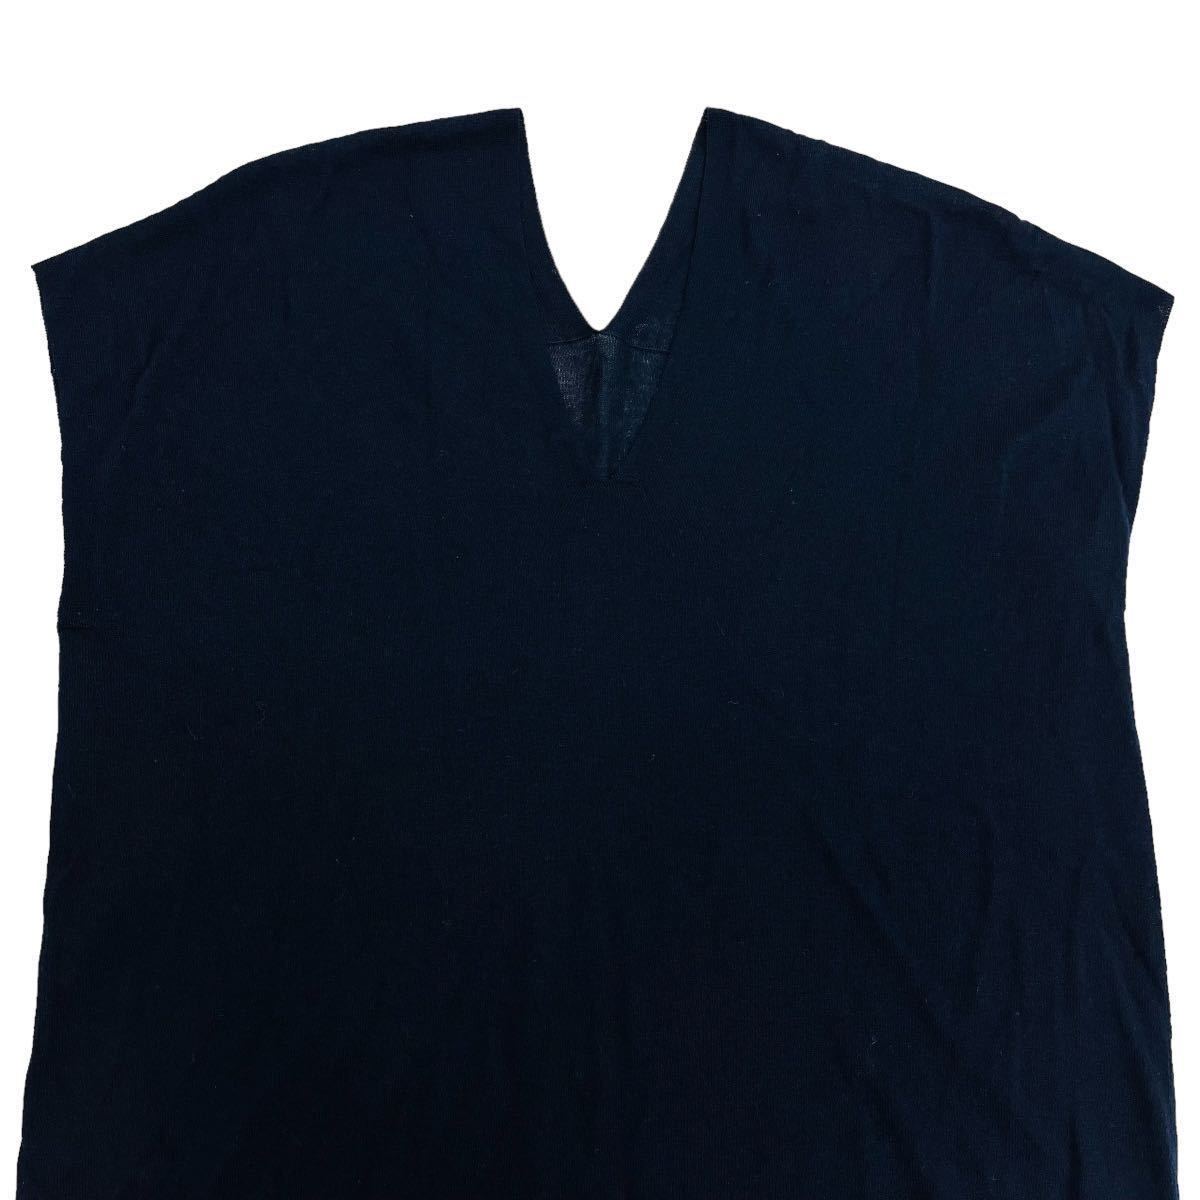 MOGA / Moga lady's no sleeve cut and sewn V neck beautiful . on goods Basic black thin 2 size O-1737